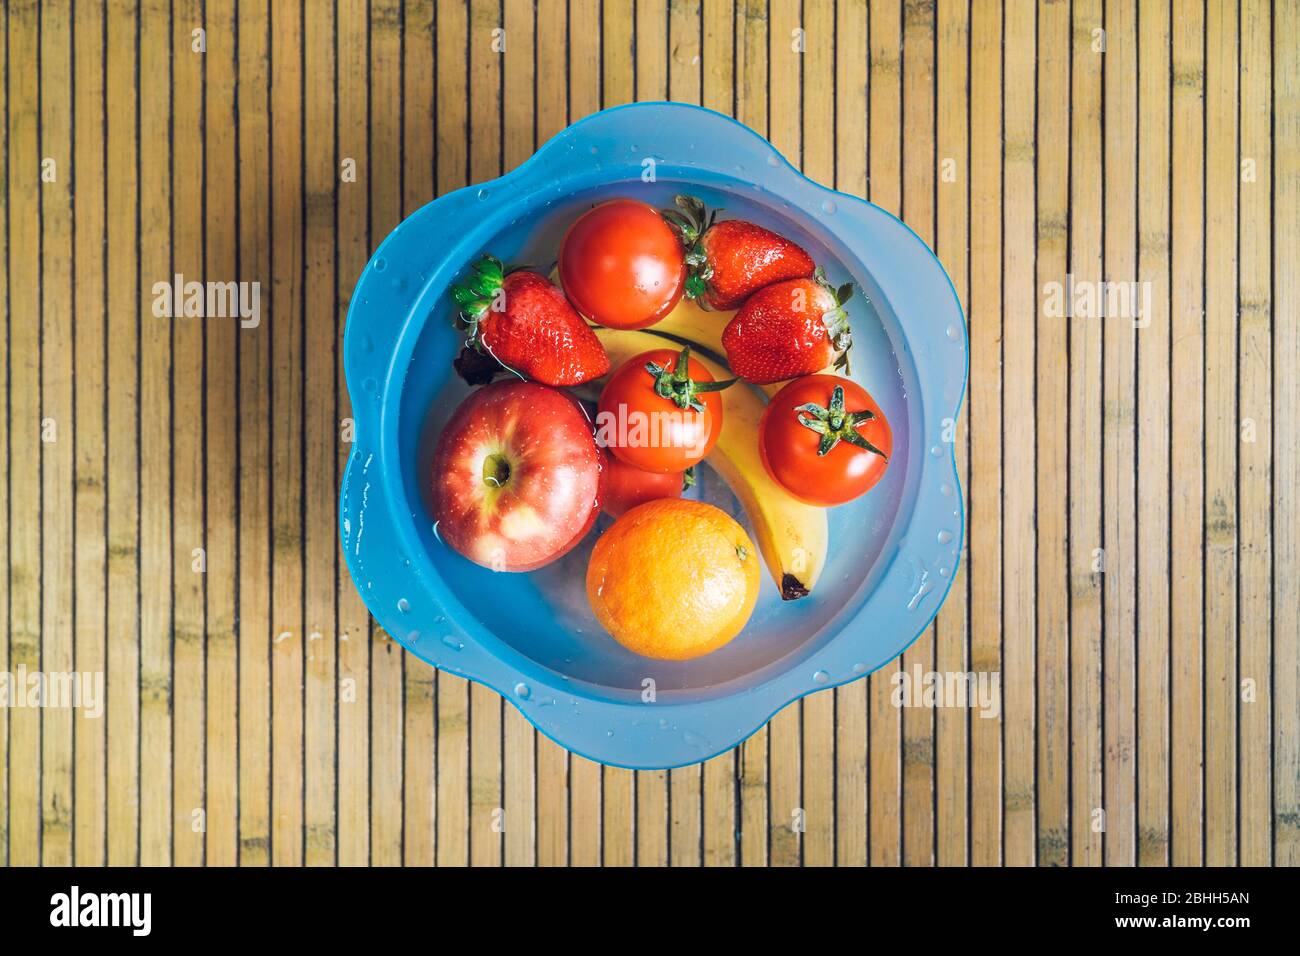 Ciotola blu con frutta fresca e pulita su una base di legno. Banane, pomodori, mele, fragole e arance immerse nell'acqua. Foto Stock